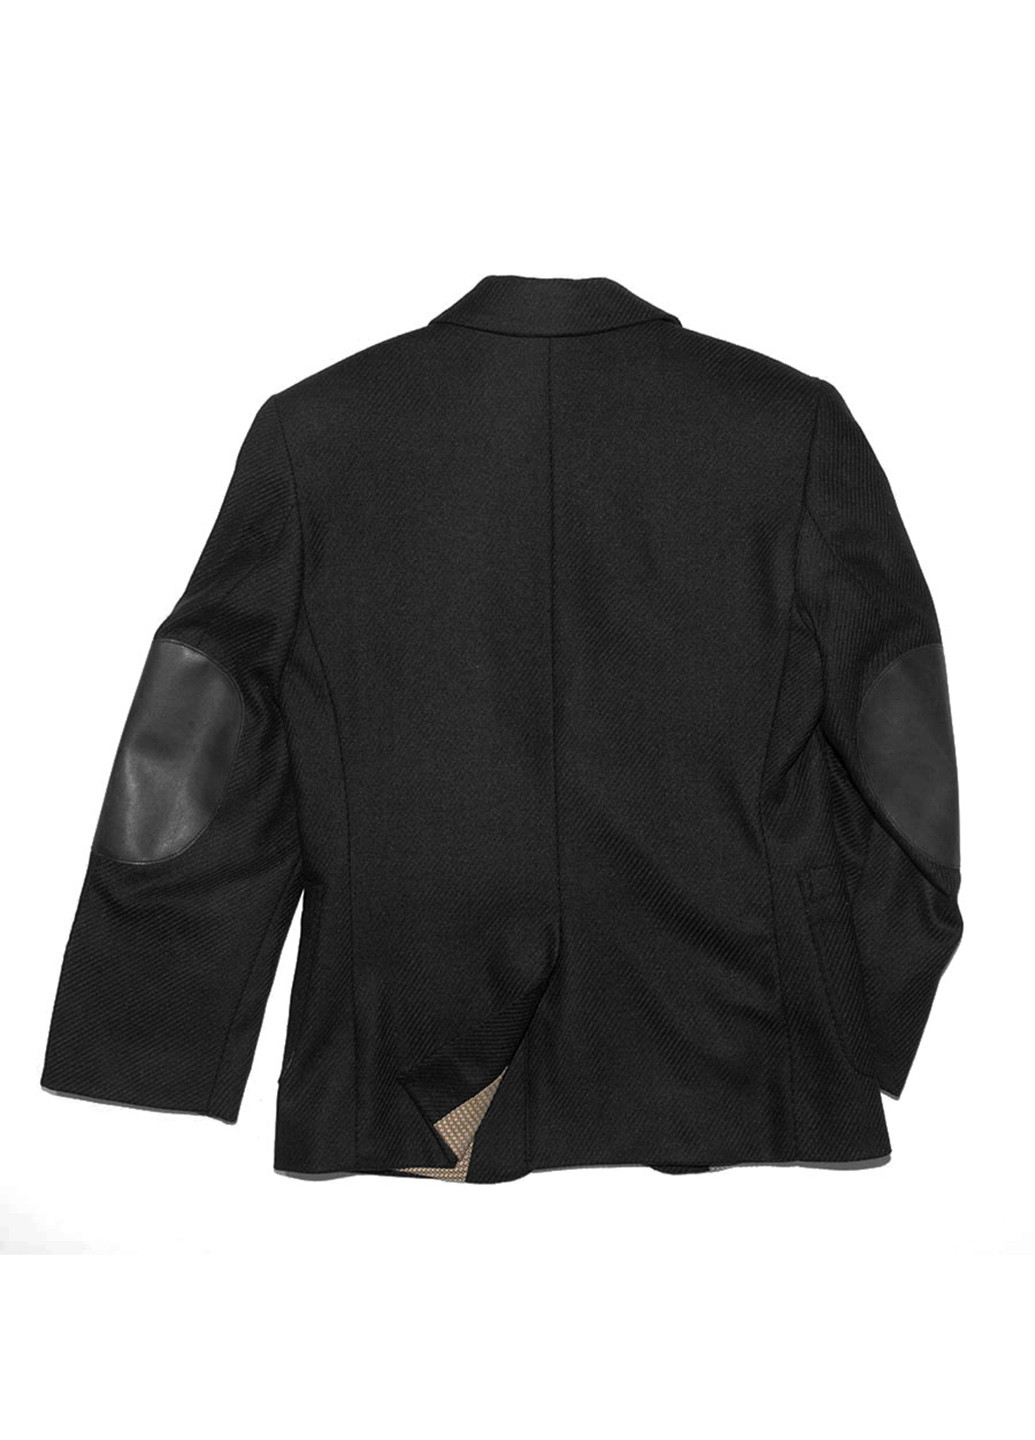 Пиджак Юность с длинным рукавом однотонный чёрный деловой